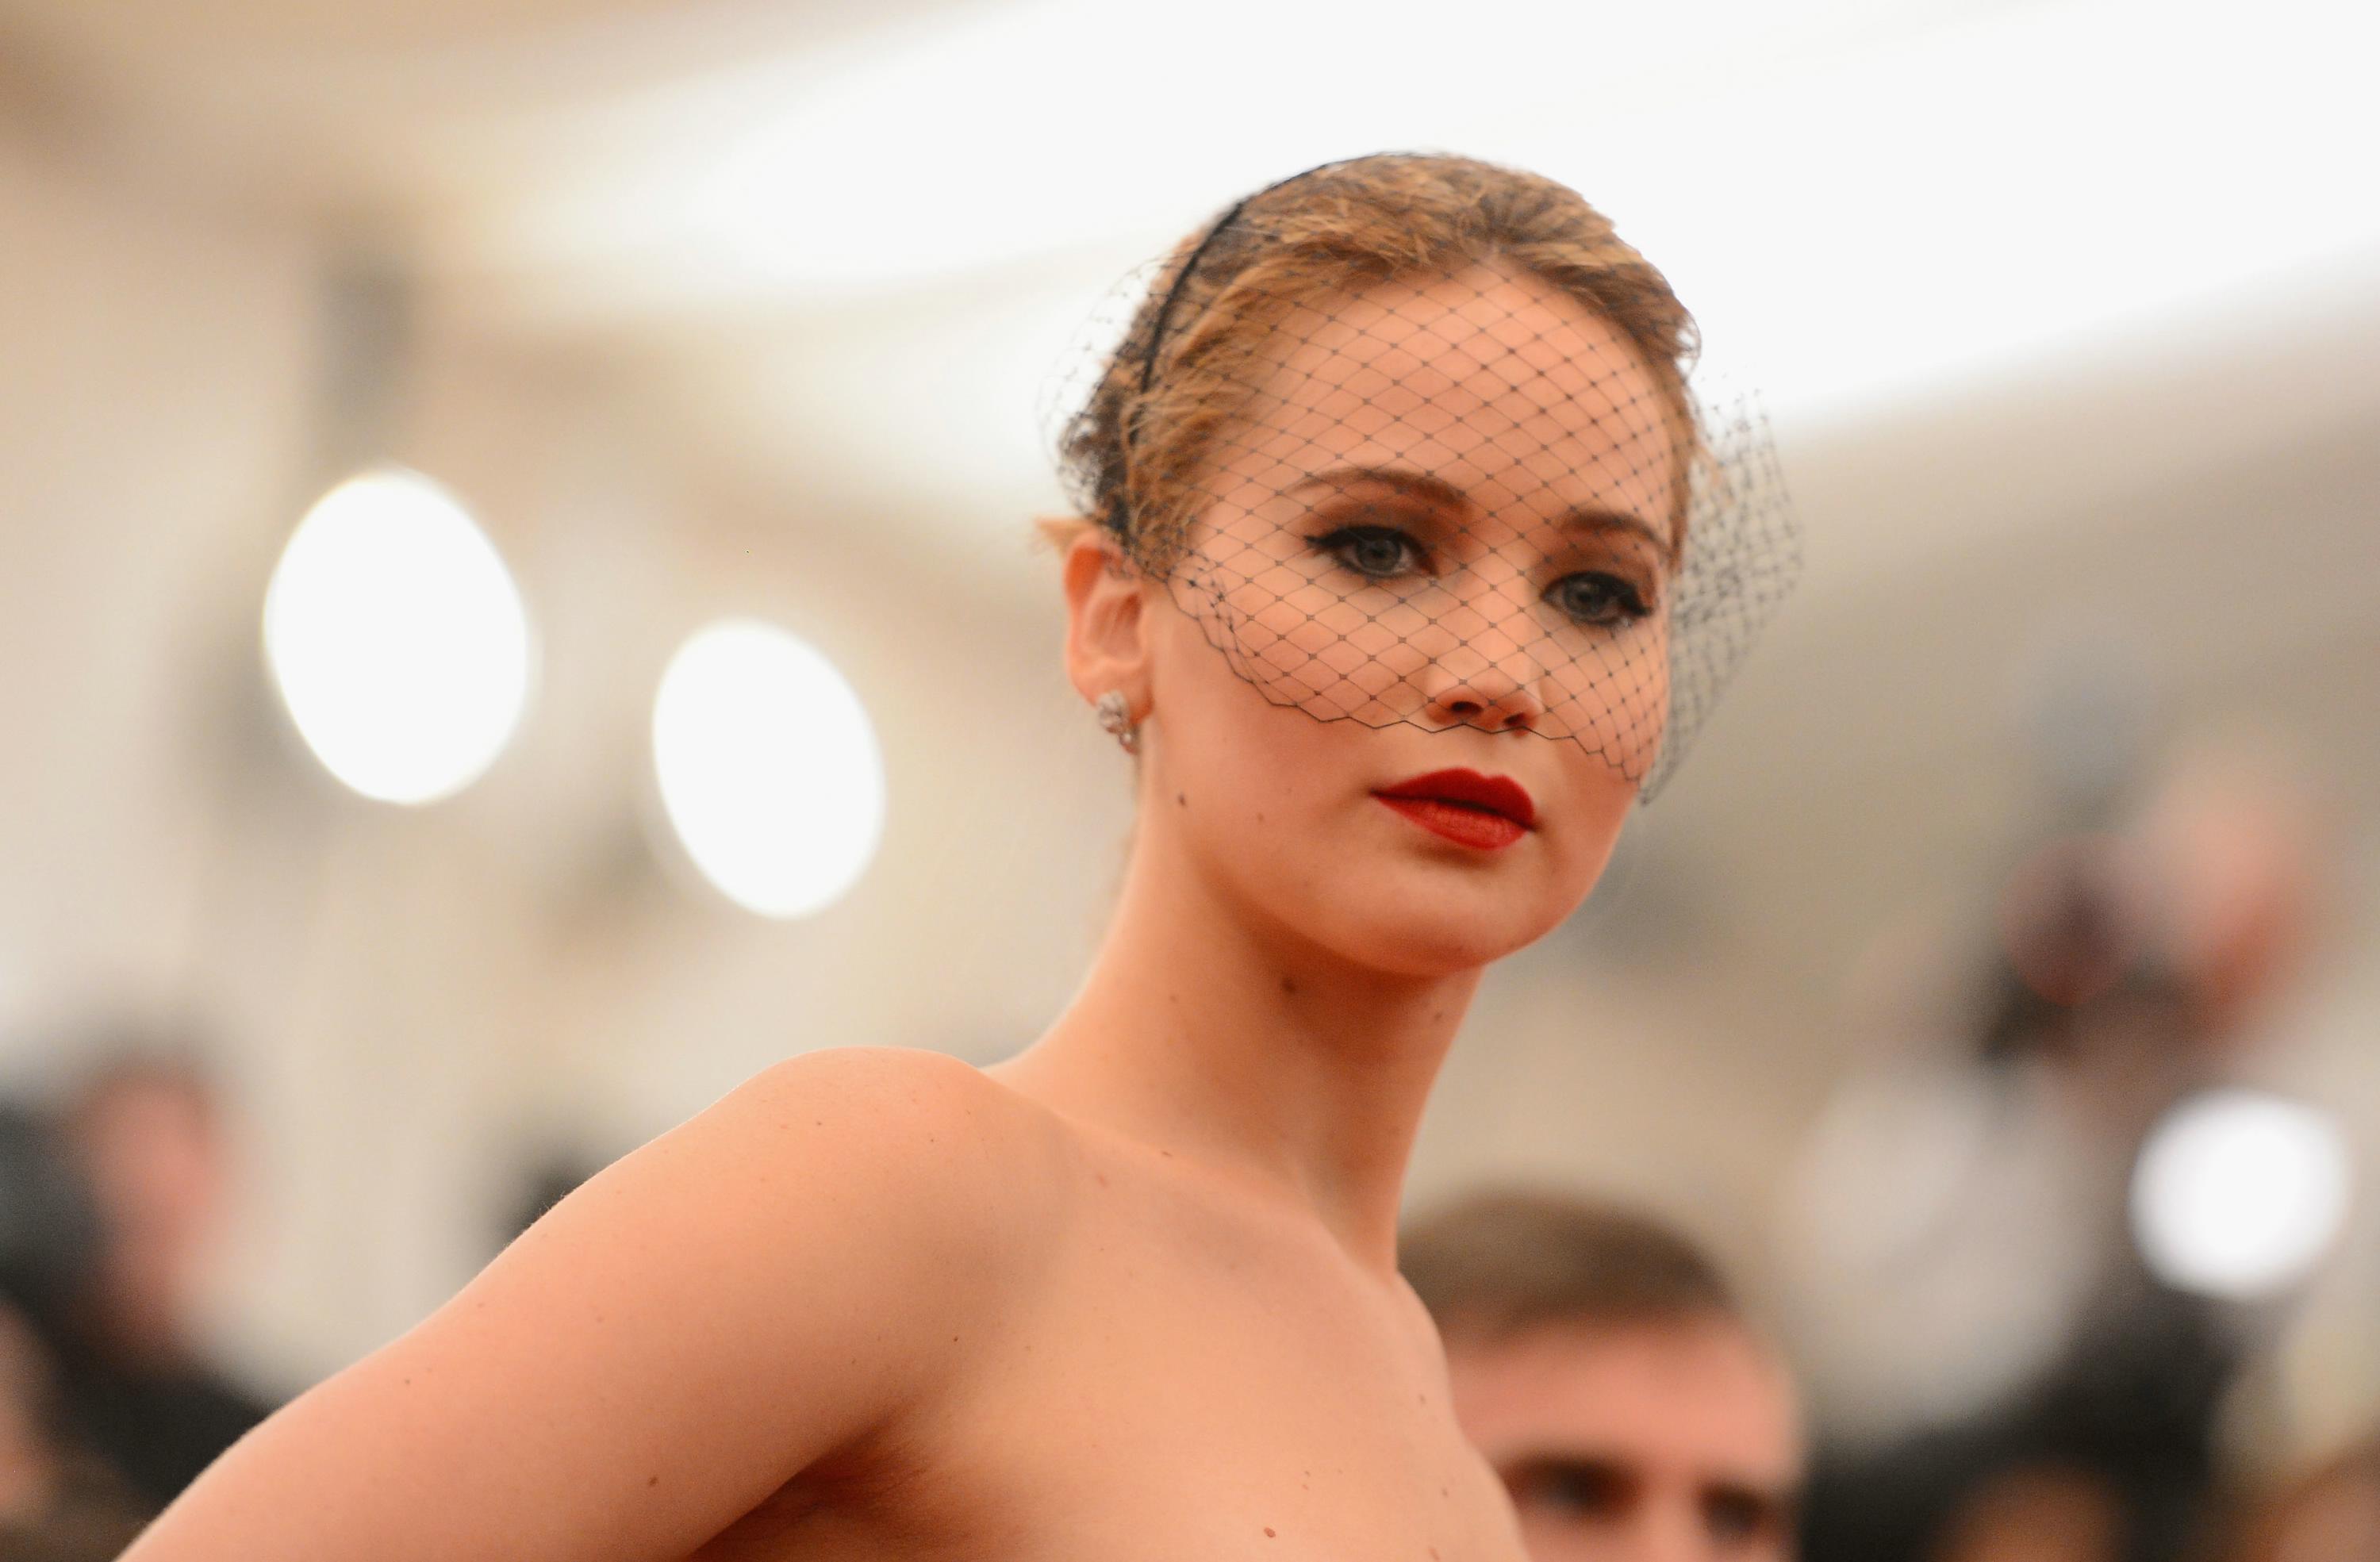 Download mobile wallpaper Celebrity, Jennifer Lawrence for free.